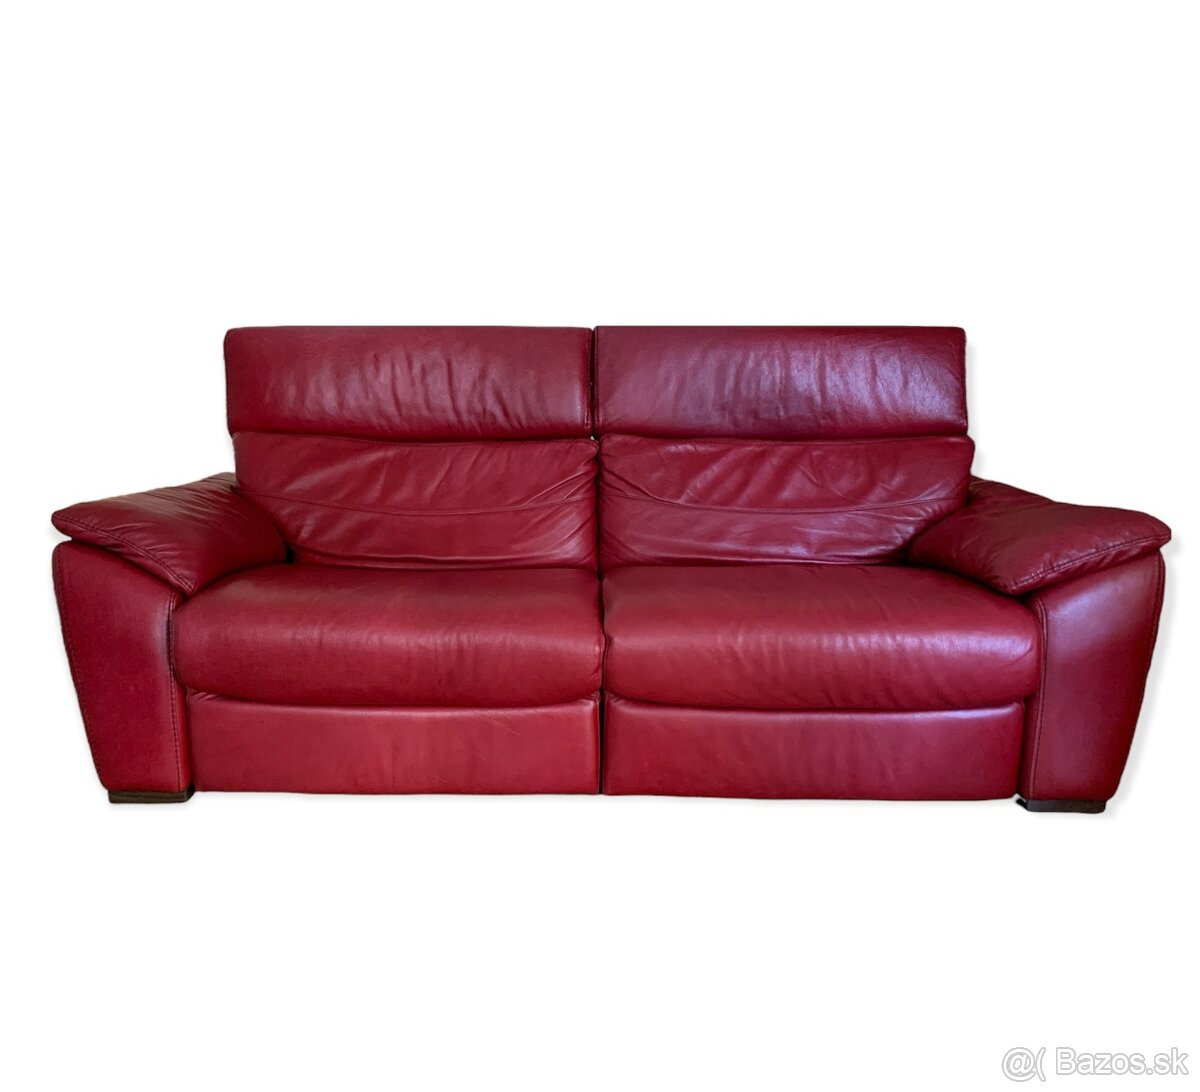 NATUZZI - luxusní kožená polohovací sofa, PC 4.990 EUR